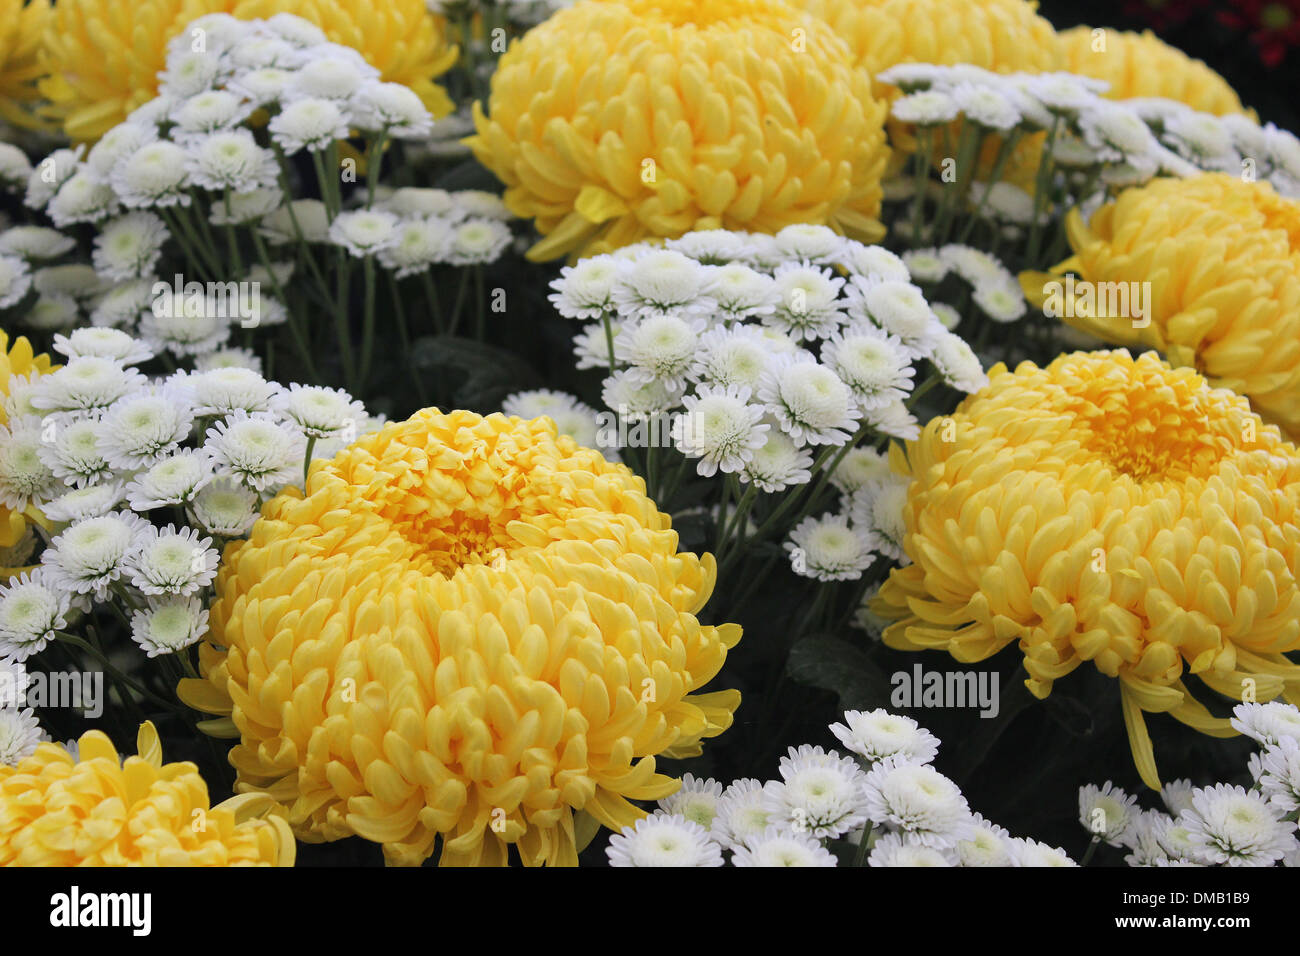 Grandi fiori gialli immagini e fotografie stock ad alta risoluzione - Alamy